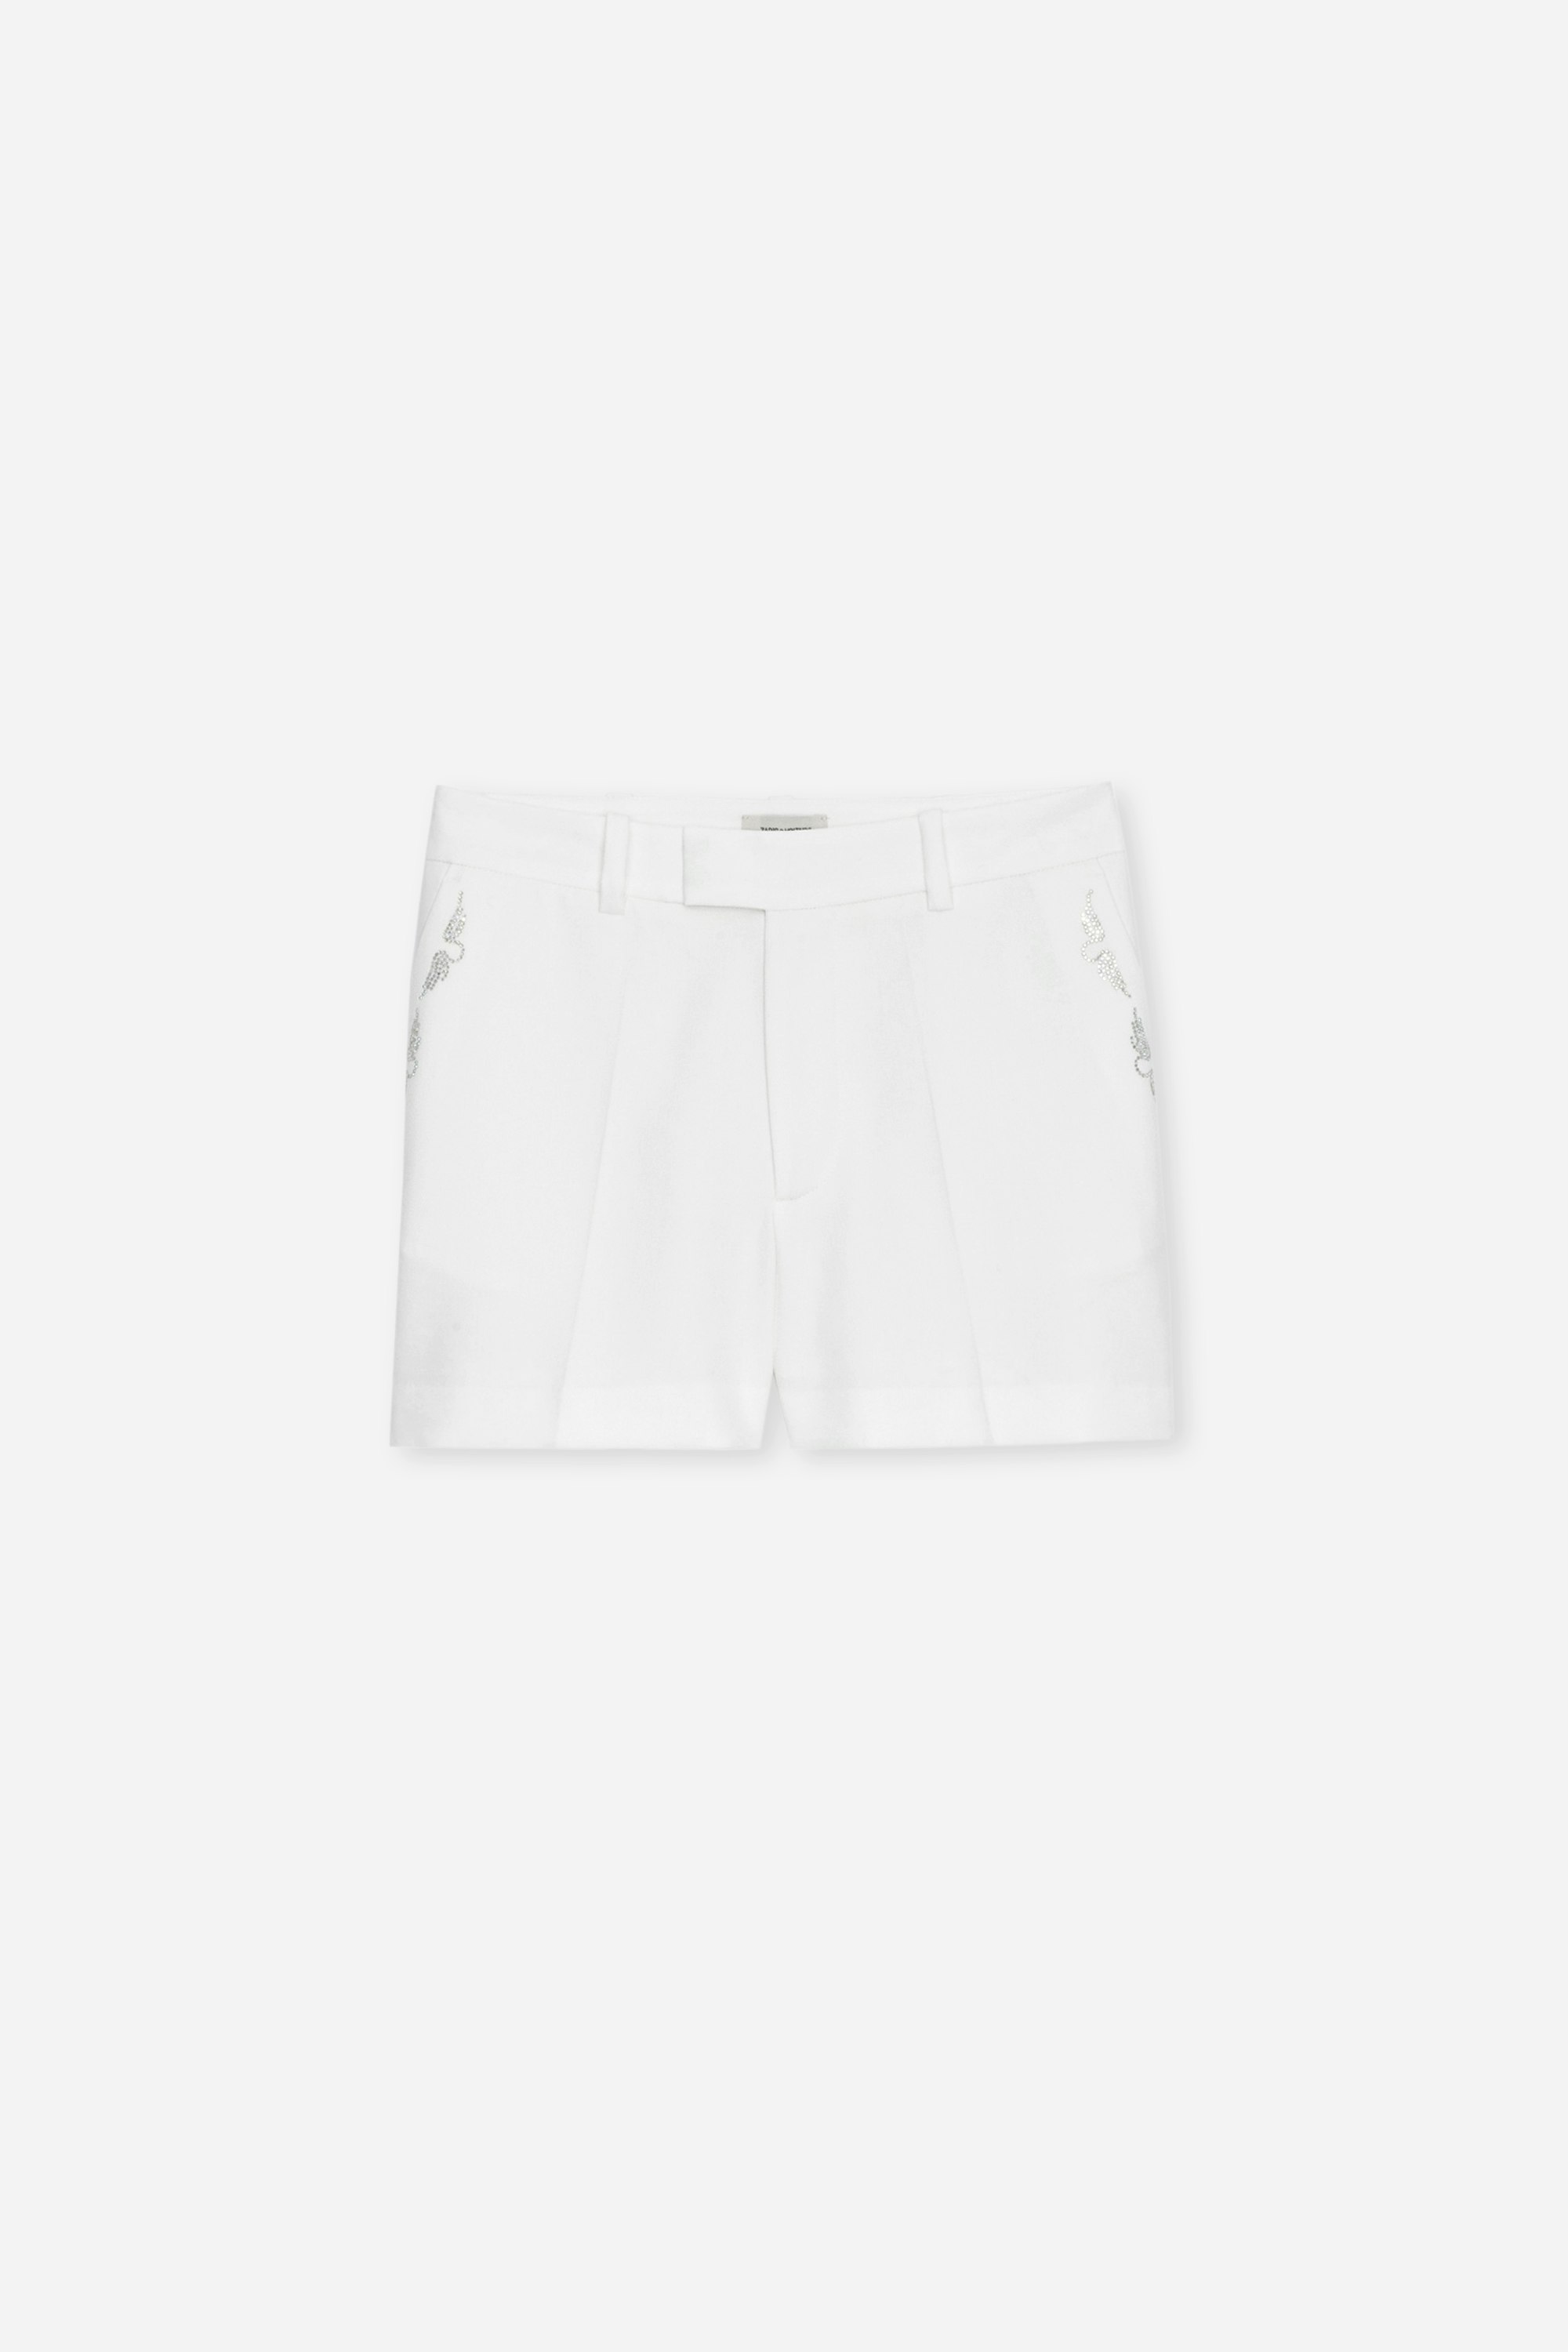 Pantalón corto Please Strass Pantalón corto blanco para mujer con bolsillos con solapa y ribeteados y alas de strass.